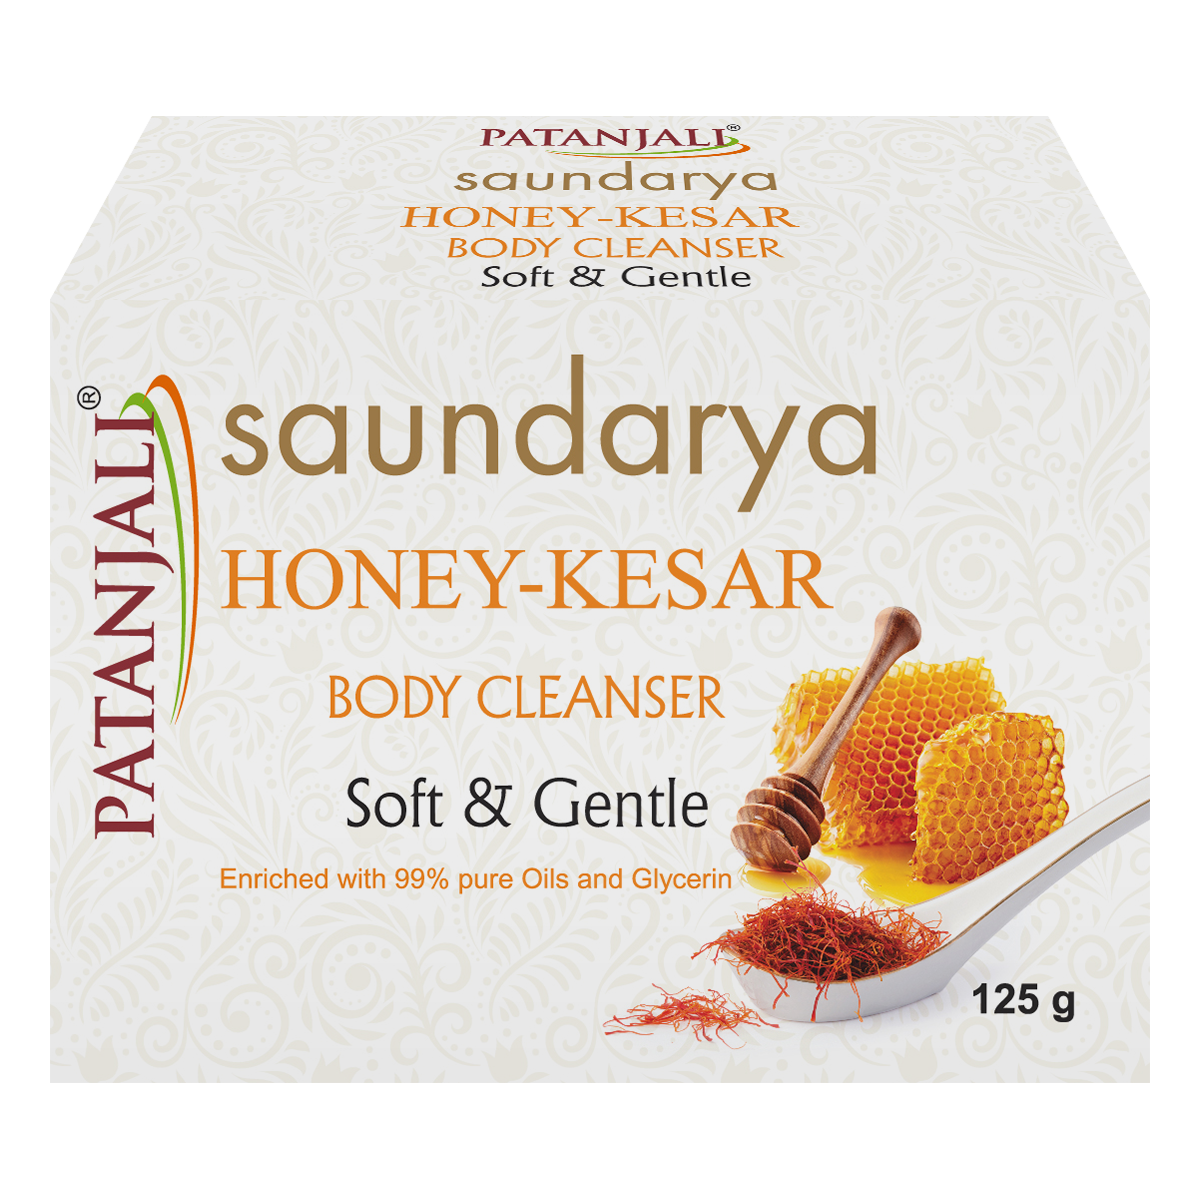 Saundarya Honey-kesar Body Cleanser